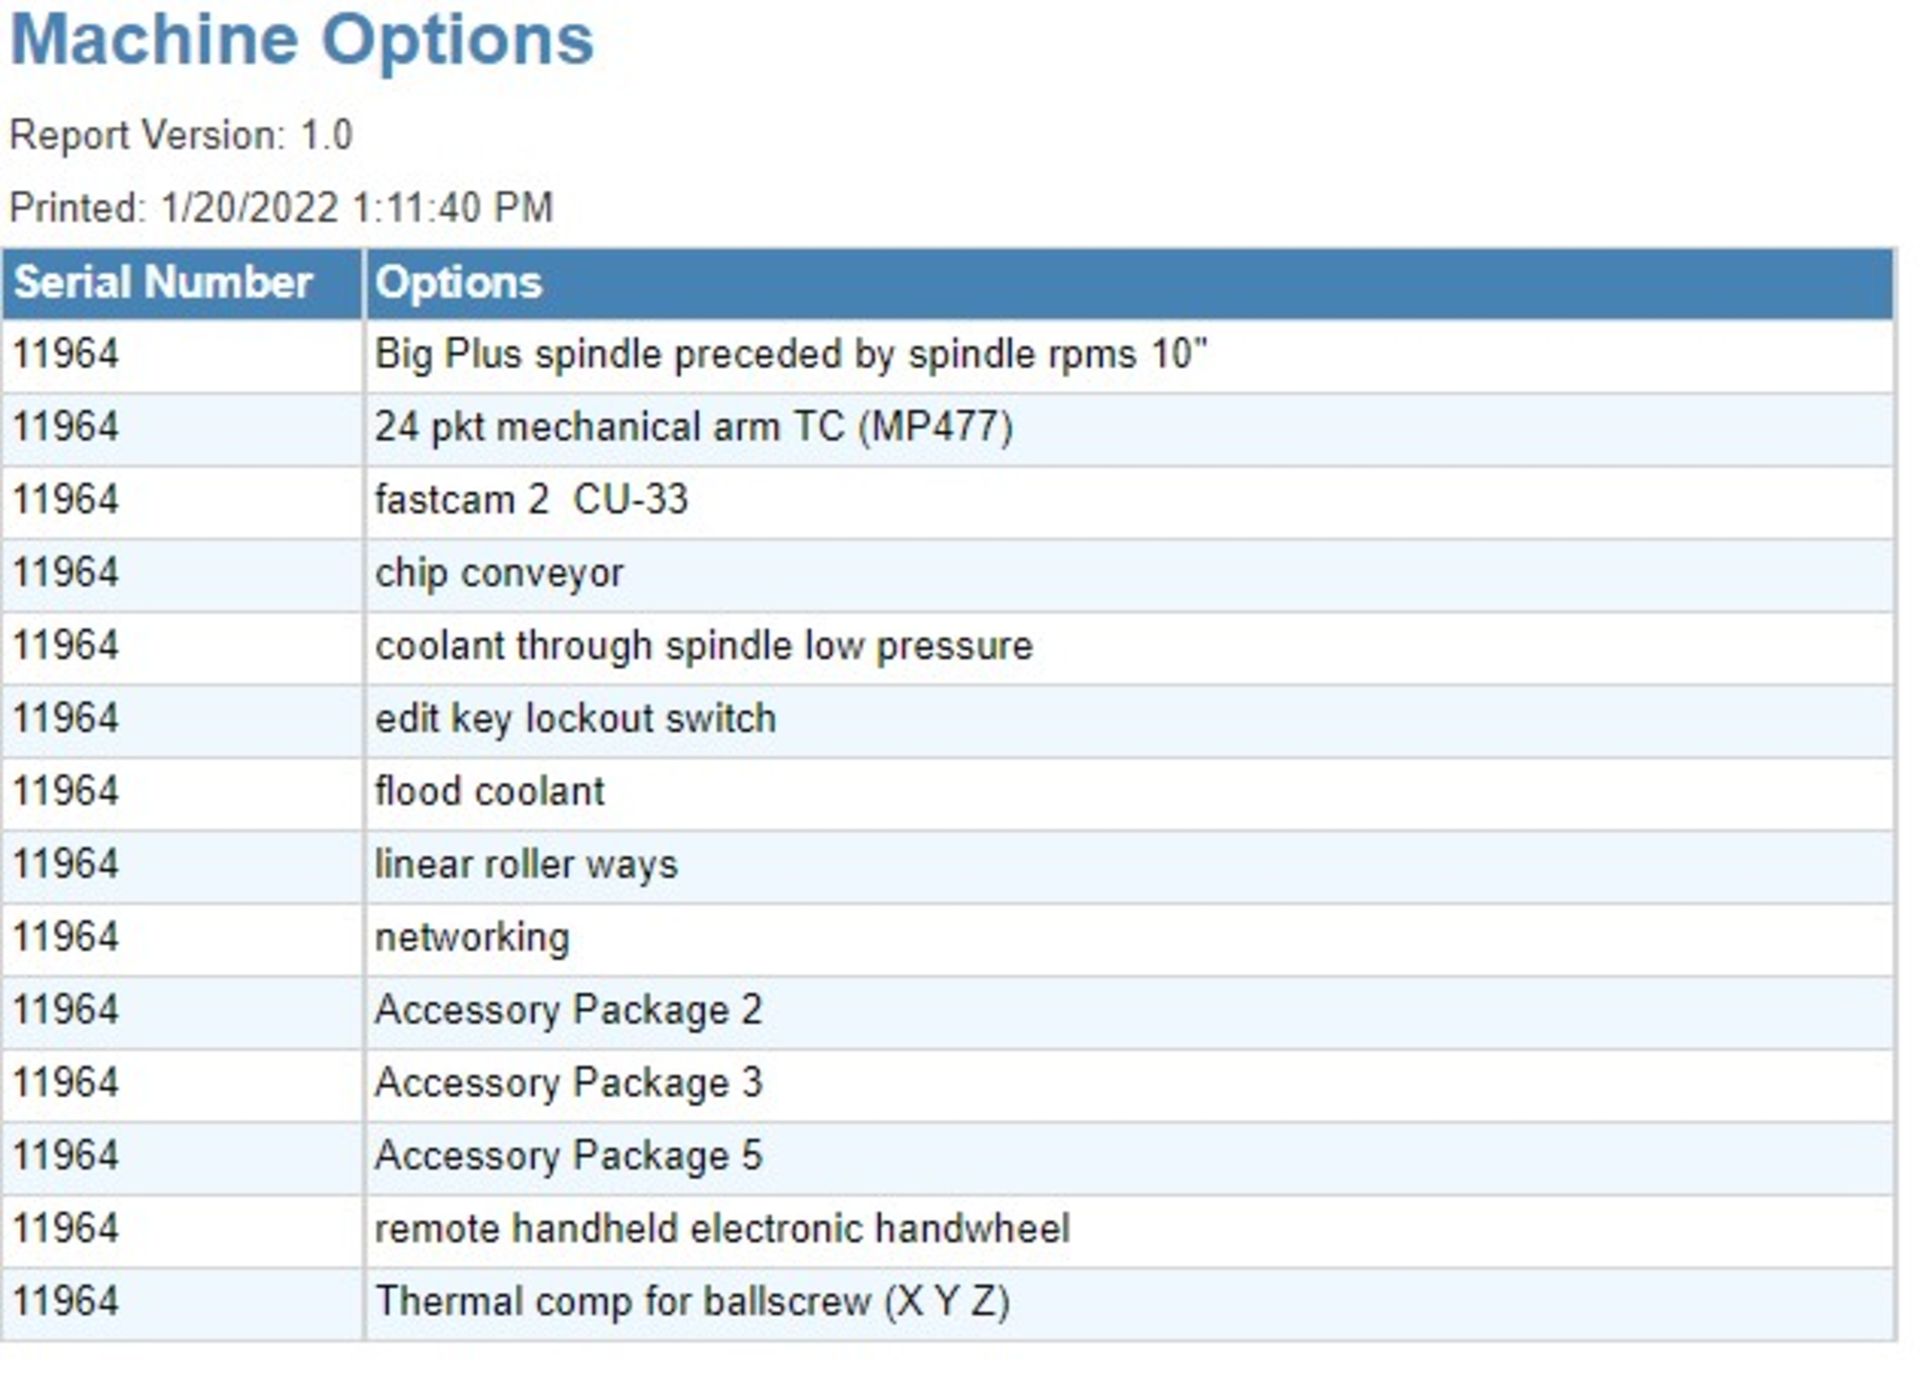 MILLTRONICS TT24 3-AXIS CNC VERTICAL MACHINING CENTER W/PALLET CHANGER, S/N 11964, NEW 2012 - Image 11 of 11